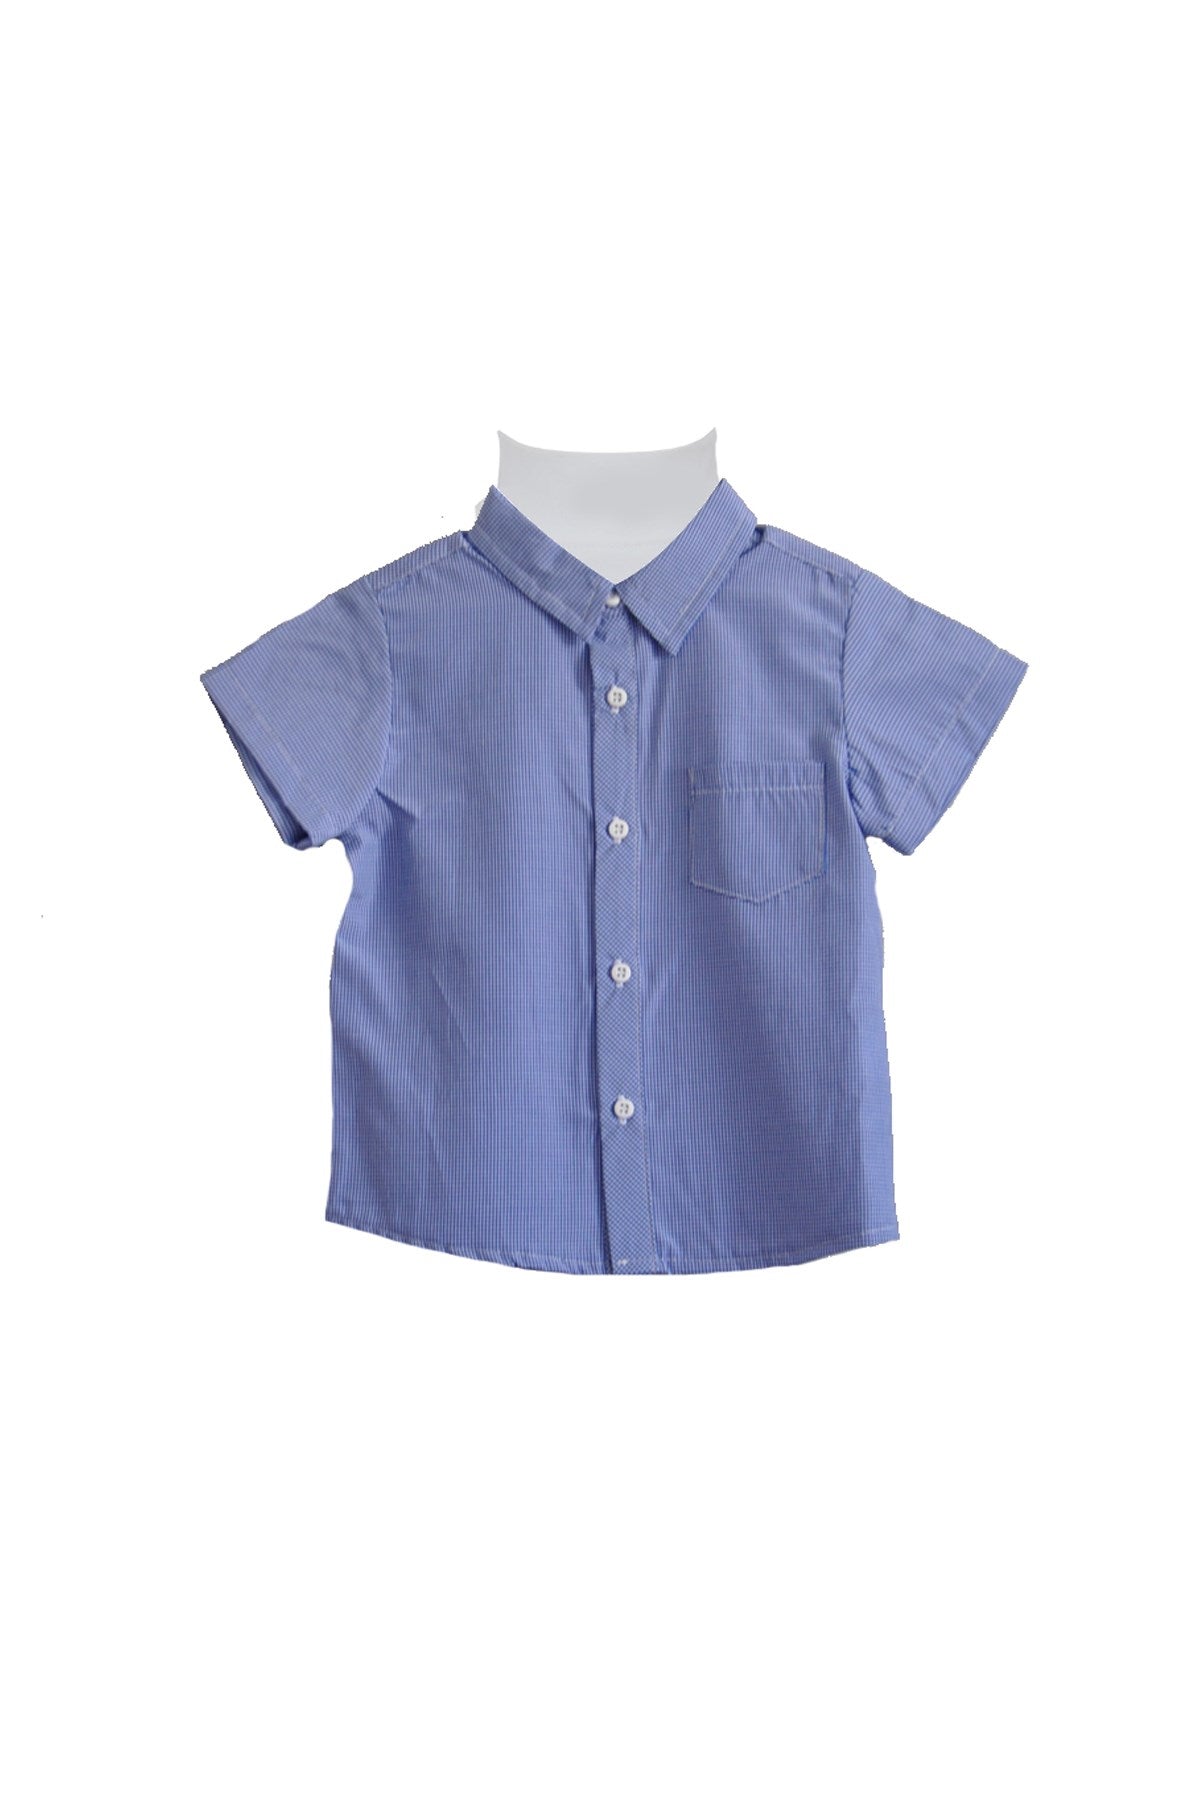 Erkek Bebek Mavi Kısa Kollu Gömlek (12-24ay)-0